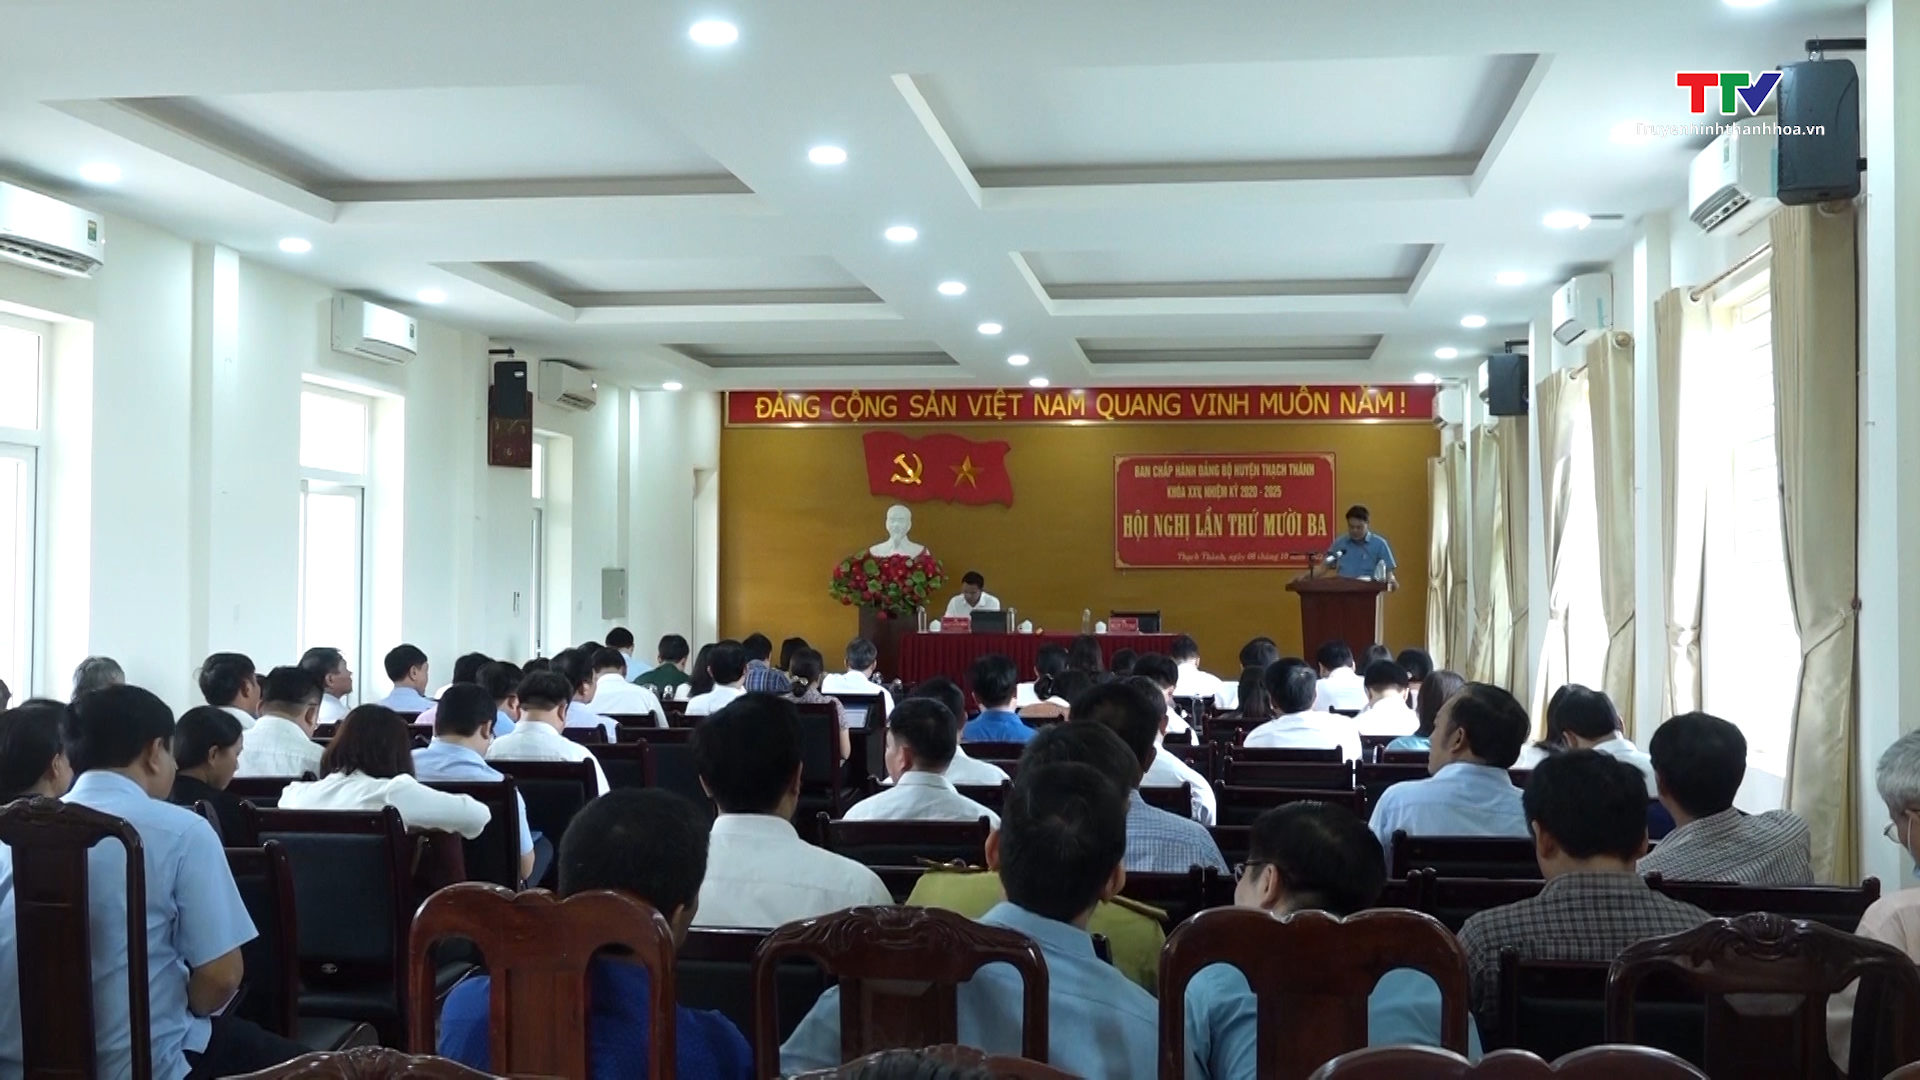 Đảng bộ huyện Thạch Thành đẩy mạnh học tập và làm theo tư tưởng, đạo đức, phong cách Hồ Chí Minh- Ảnh 1.